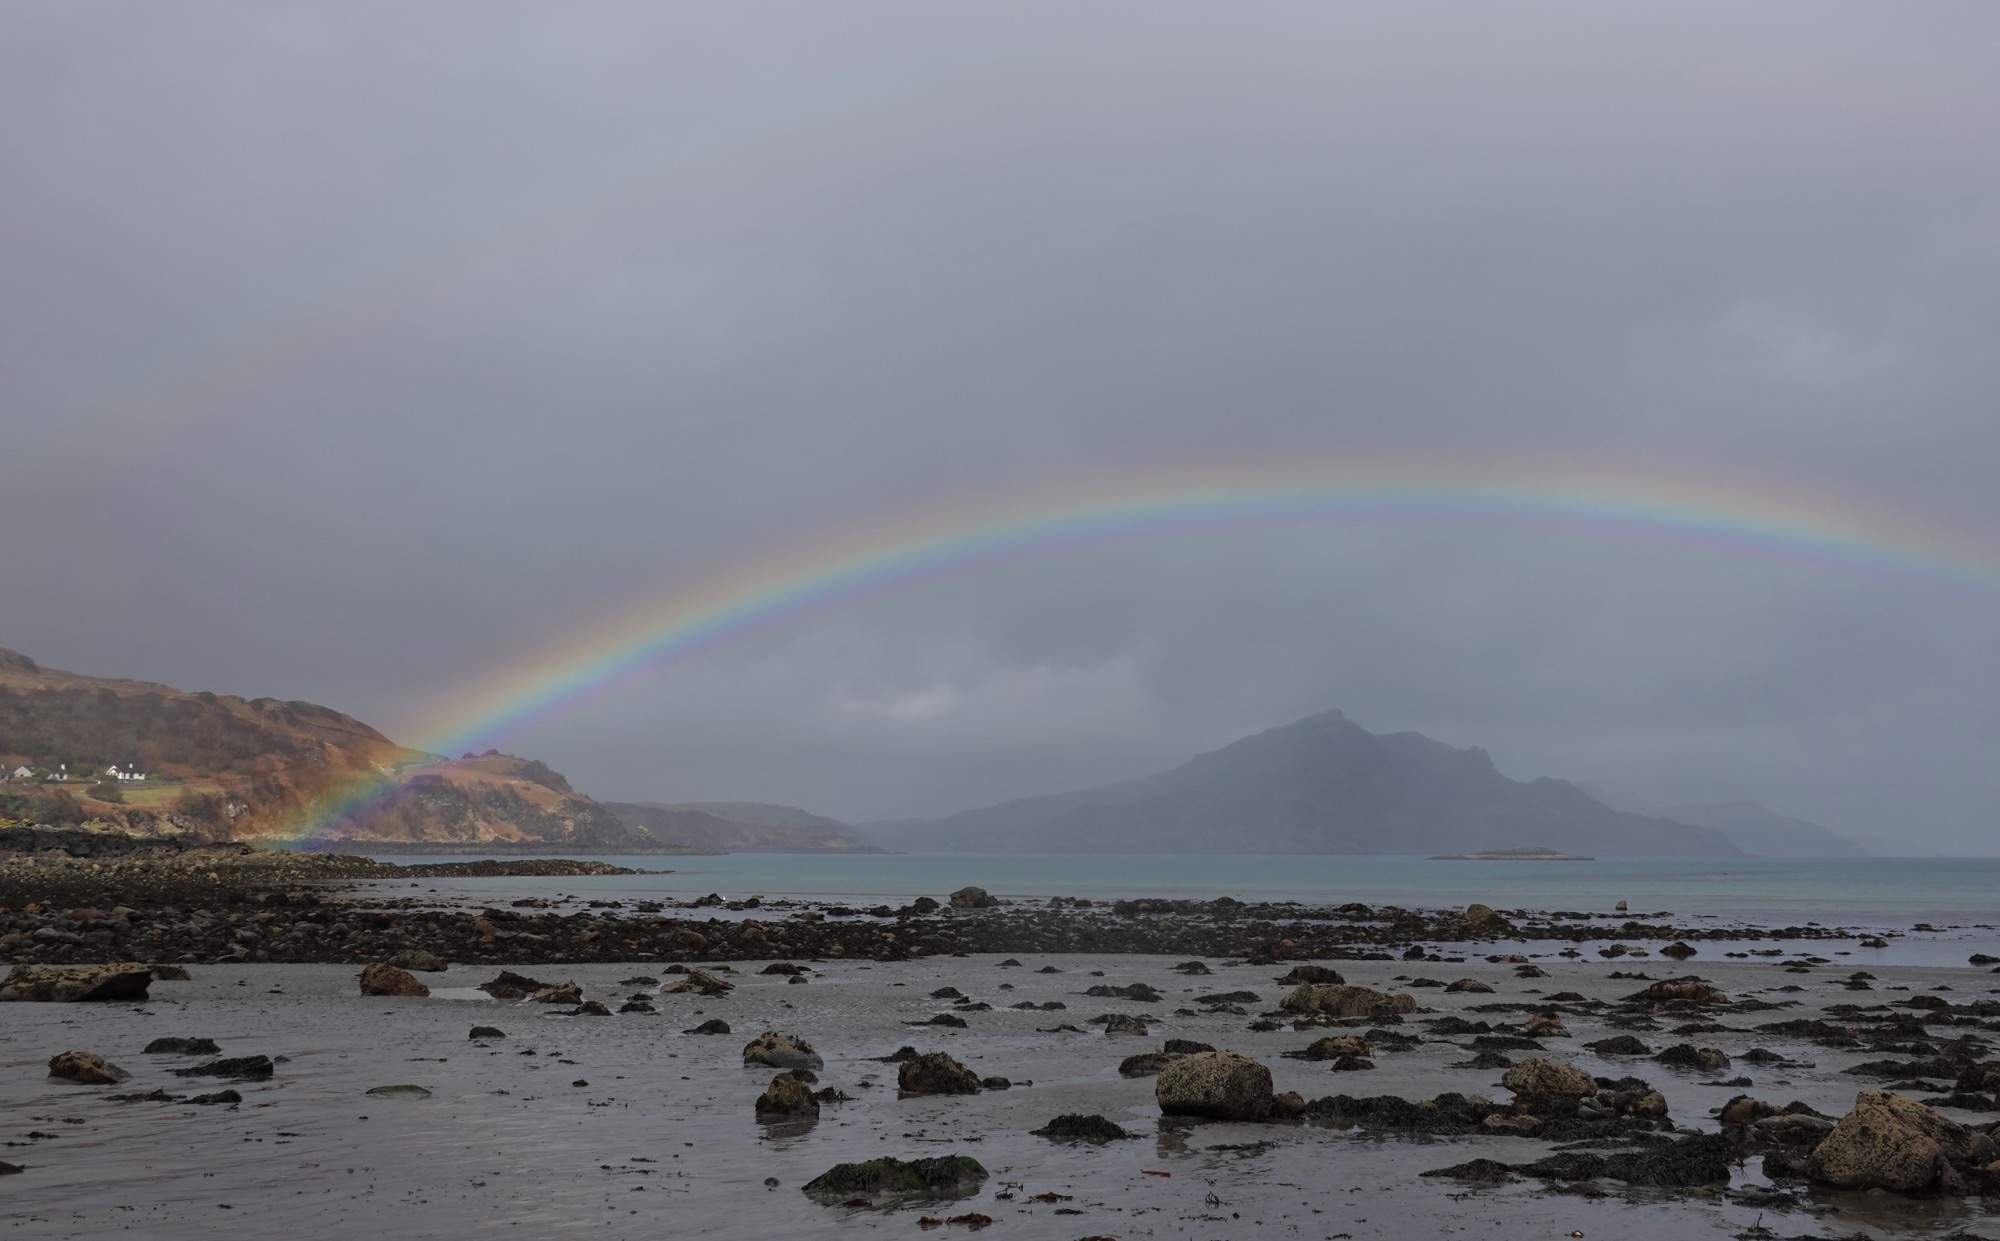 Skye under a rainbow